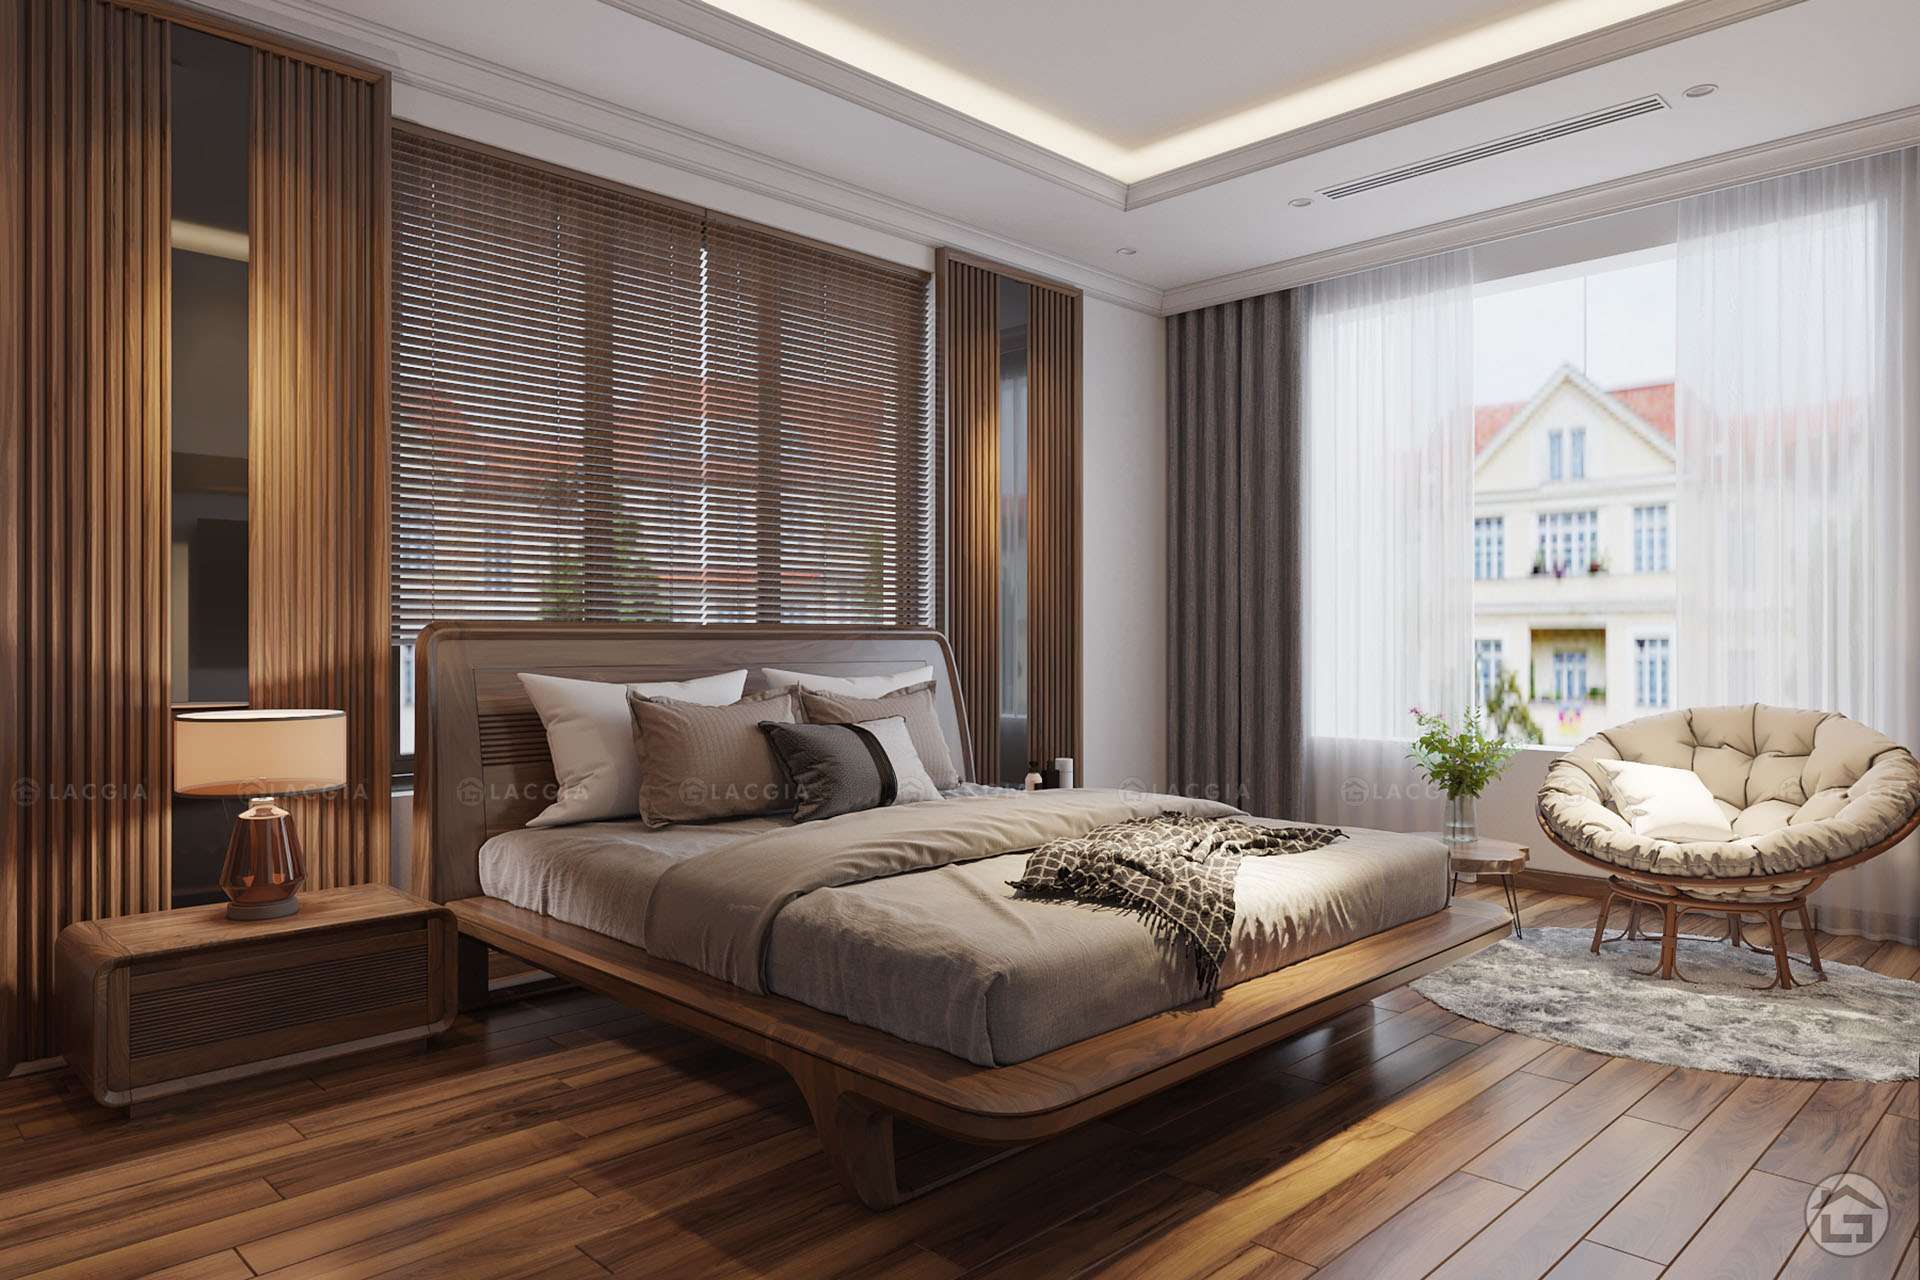 Thiết kế phòng ngủ 20m2 đơn giản mà đẹp, hiện đại [THẤY LÀ MÊ] | Trang trí  nhà cửa, Phòng ngủ, Thiết kế